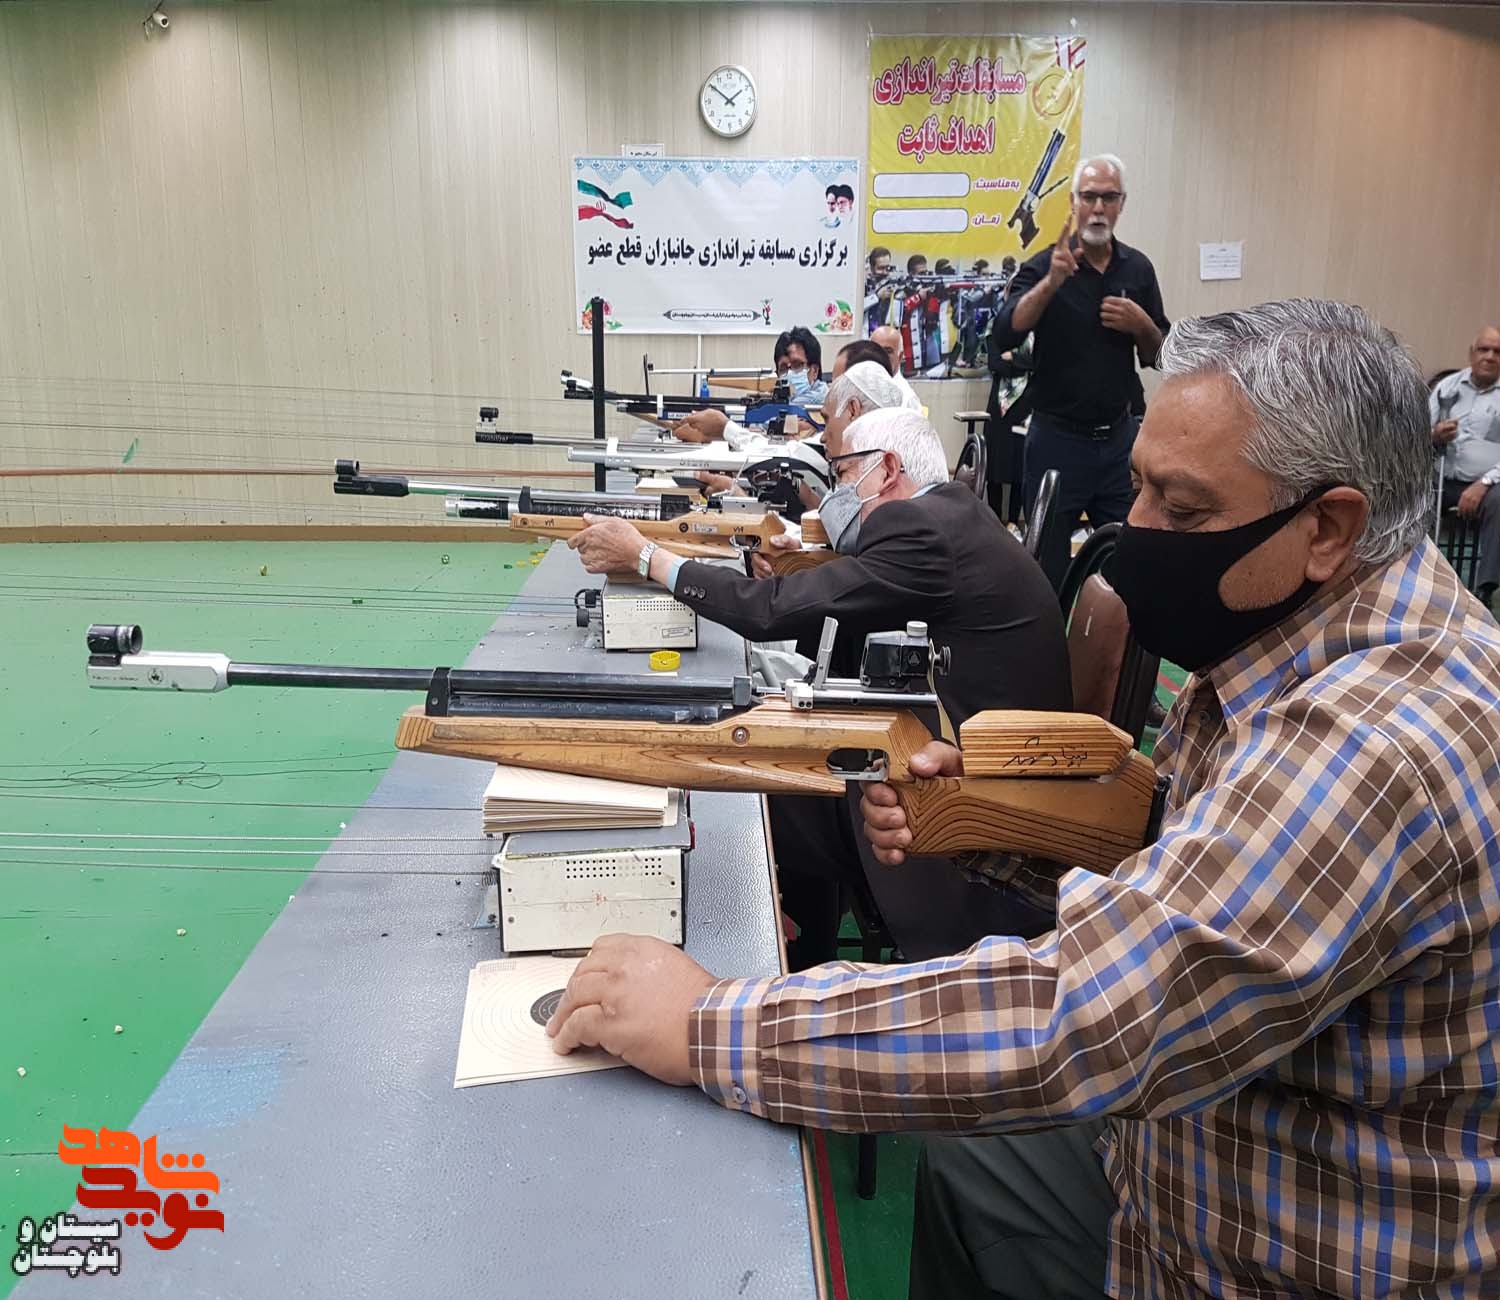 برگزاری مسابقه تیراندازی جانبازان قطع عضو در شهرستان زاهدان